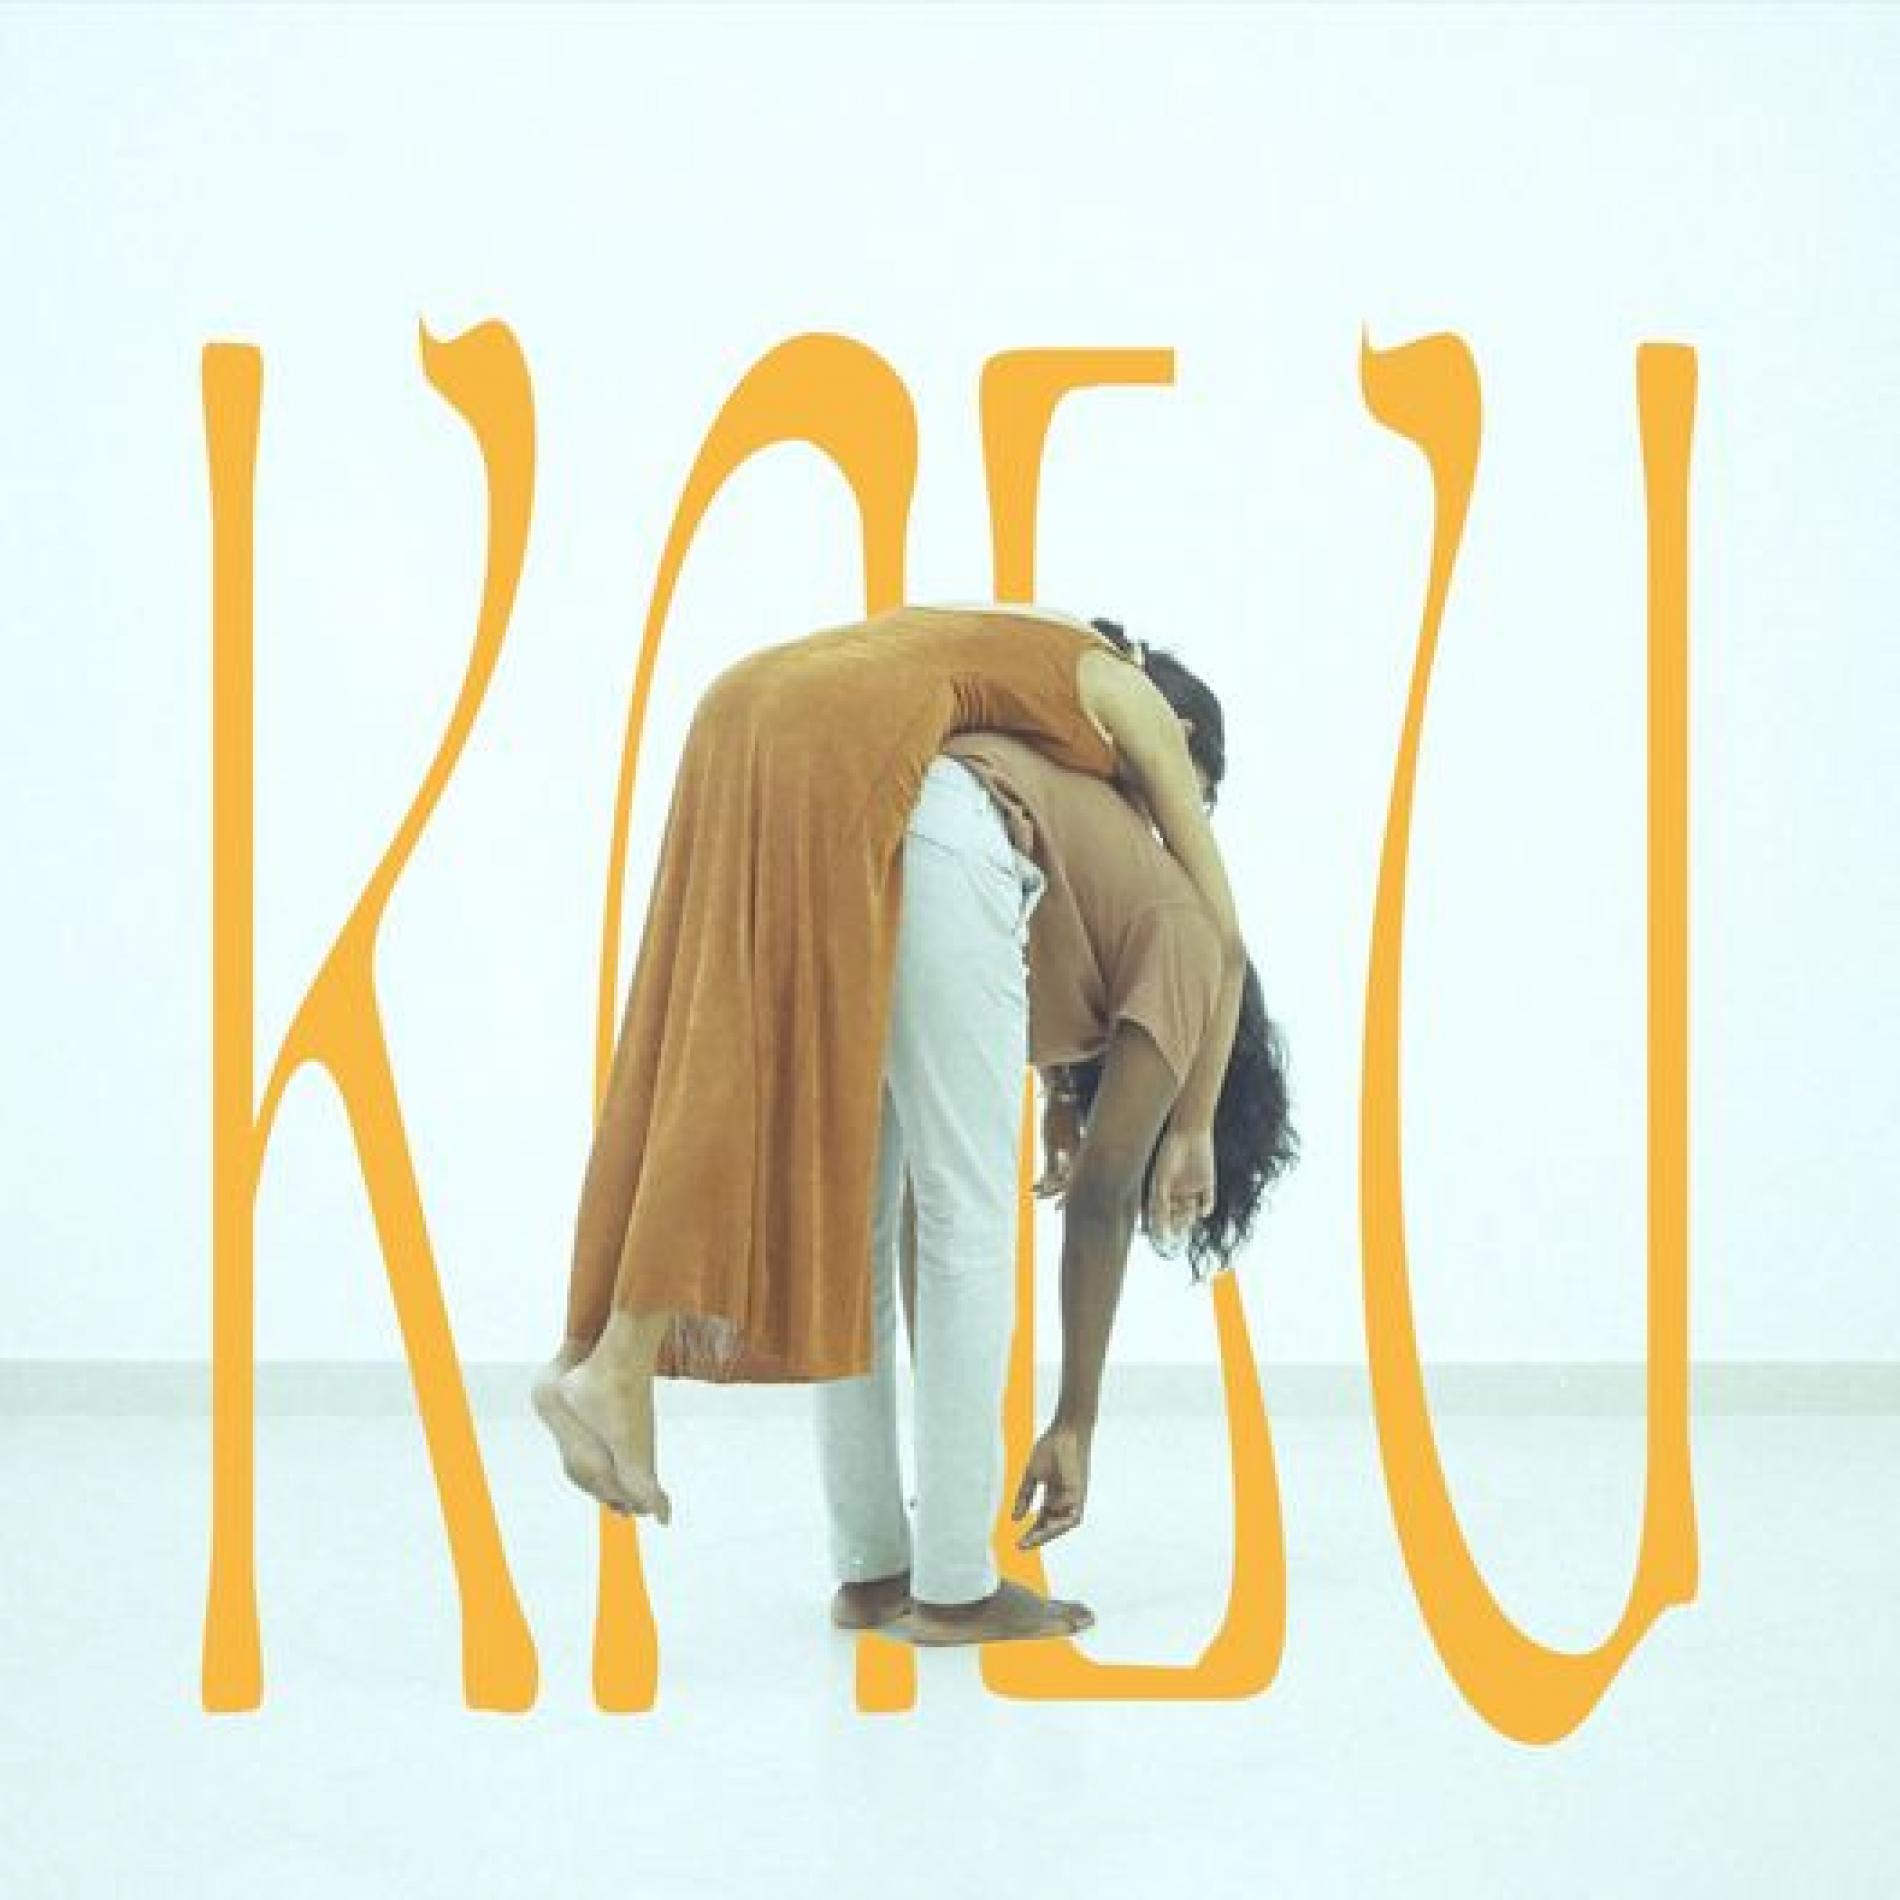 New Music : Kalu – Mage Kiya